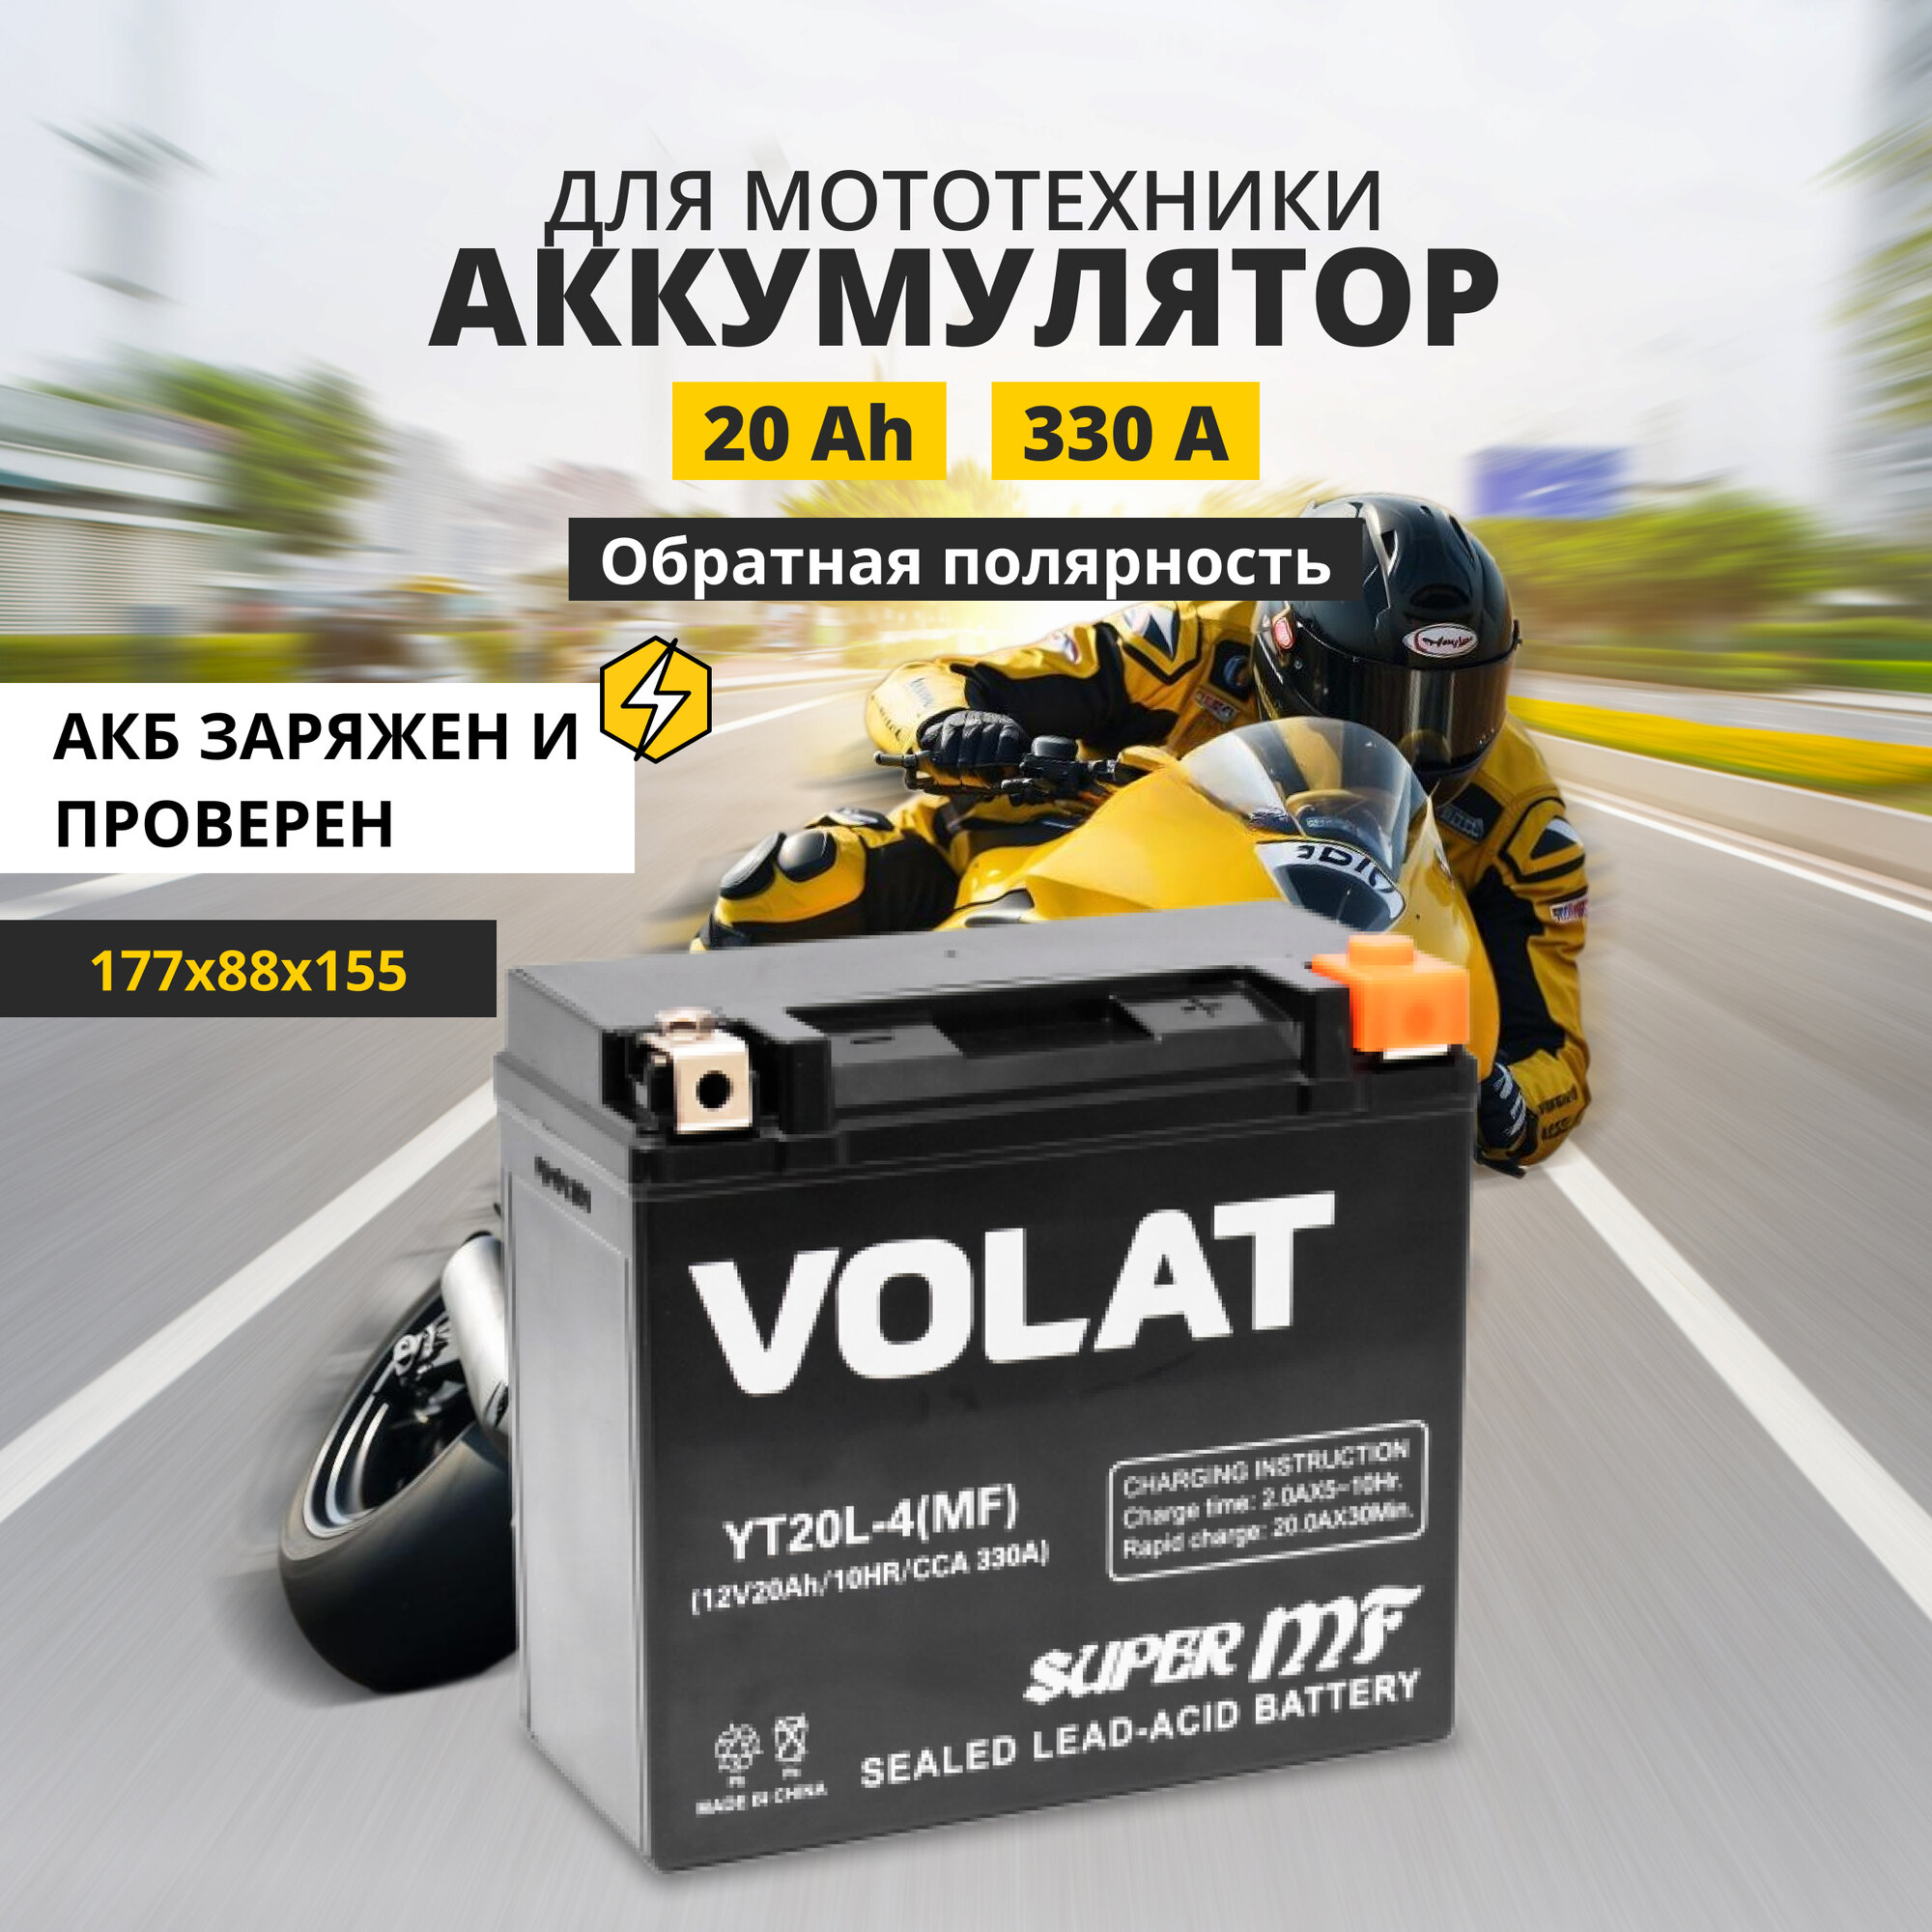 Аккумулятор для мотоцикла 12v Volat YT20L-4(MF) обратная полярность 20 Ah 330 A AGM, акб на скутер, мопед, квадроцикл 177x88x155 мм